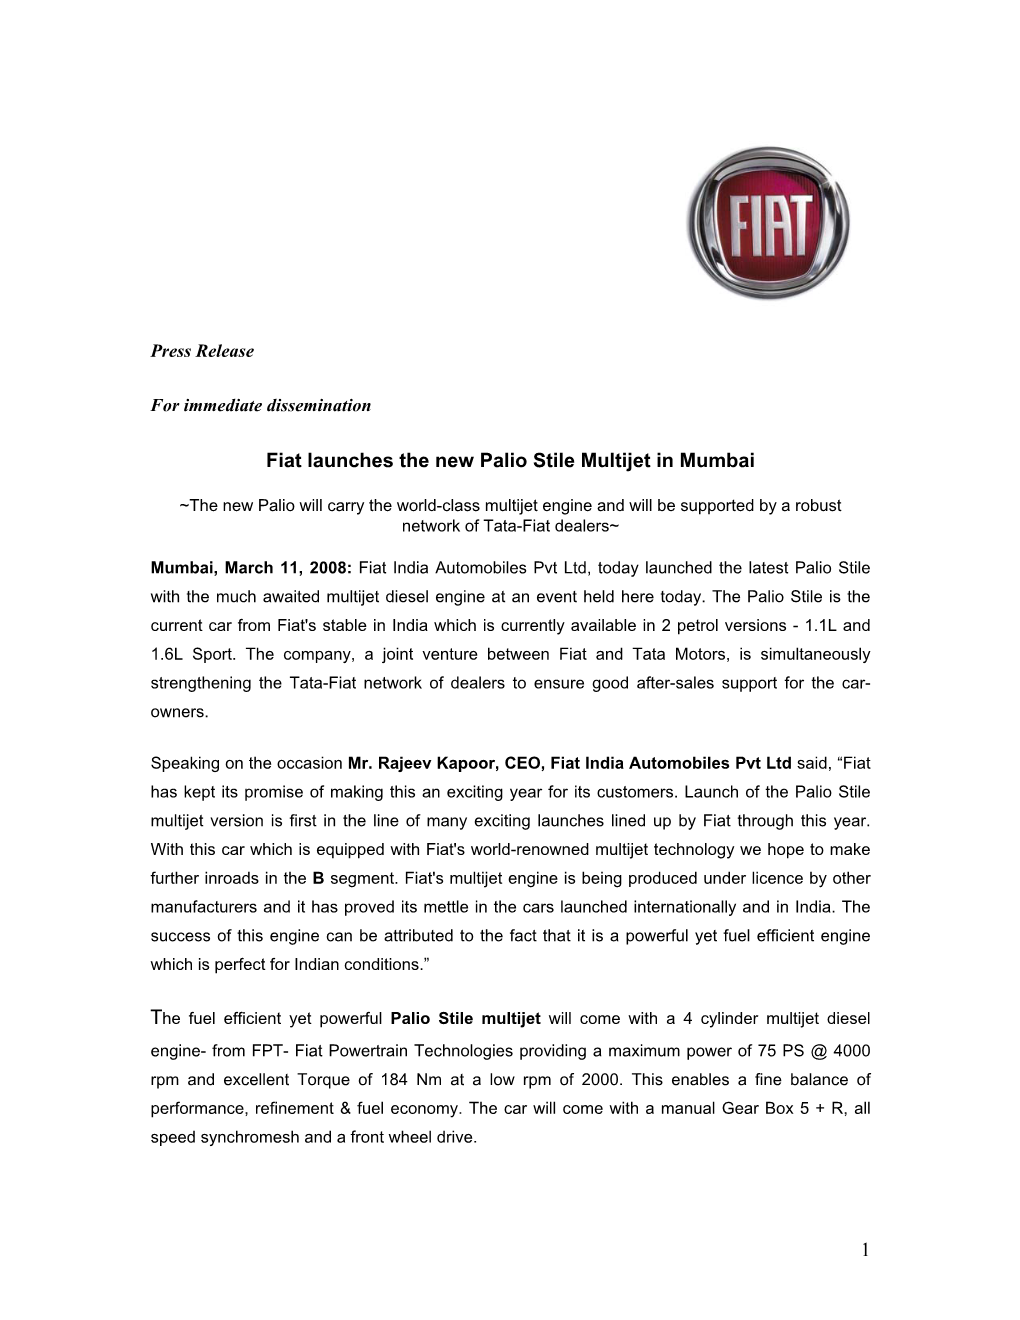 1 Fiat Launches the New Palio Stile Multijet in Mumbai